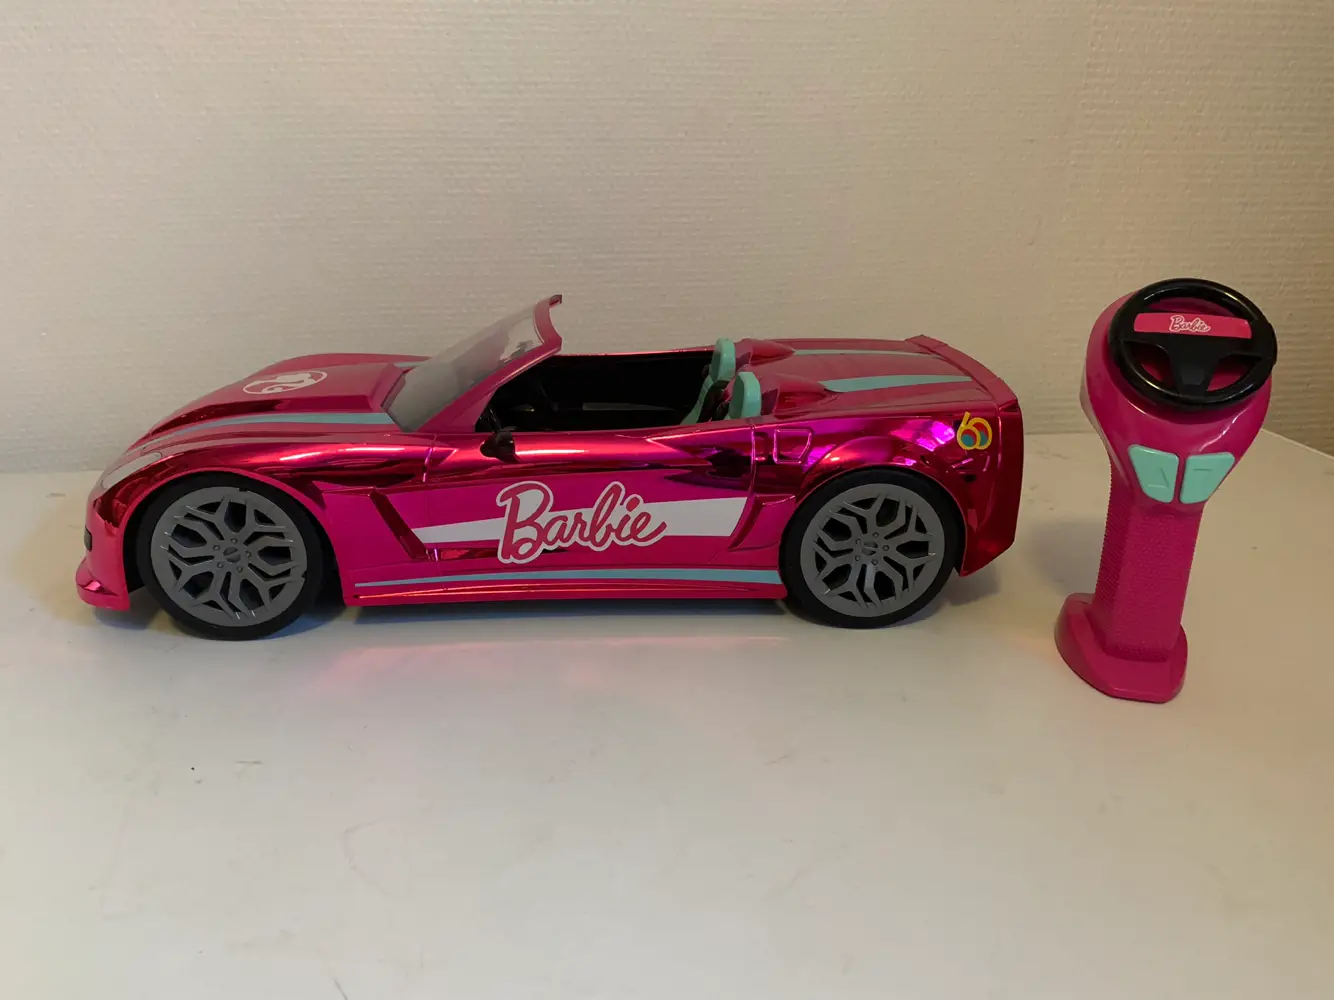 Køb Barbie Bil, af Camilla på Reshopper · Shop secondhand til børn, mor og